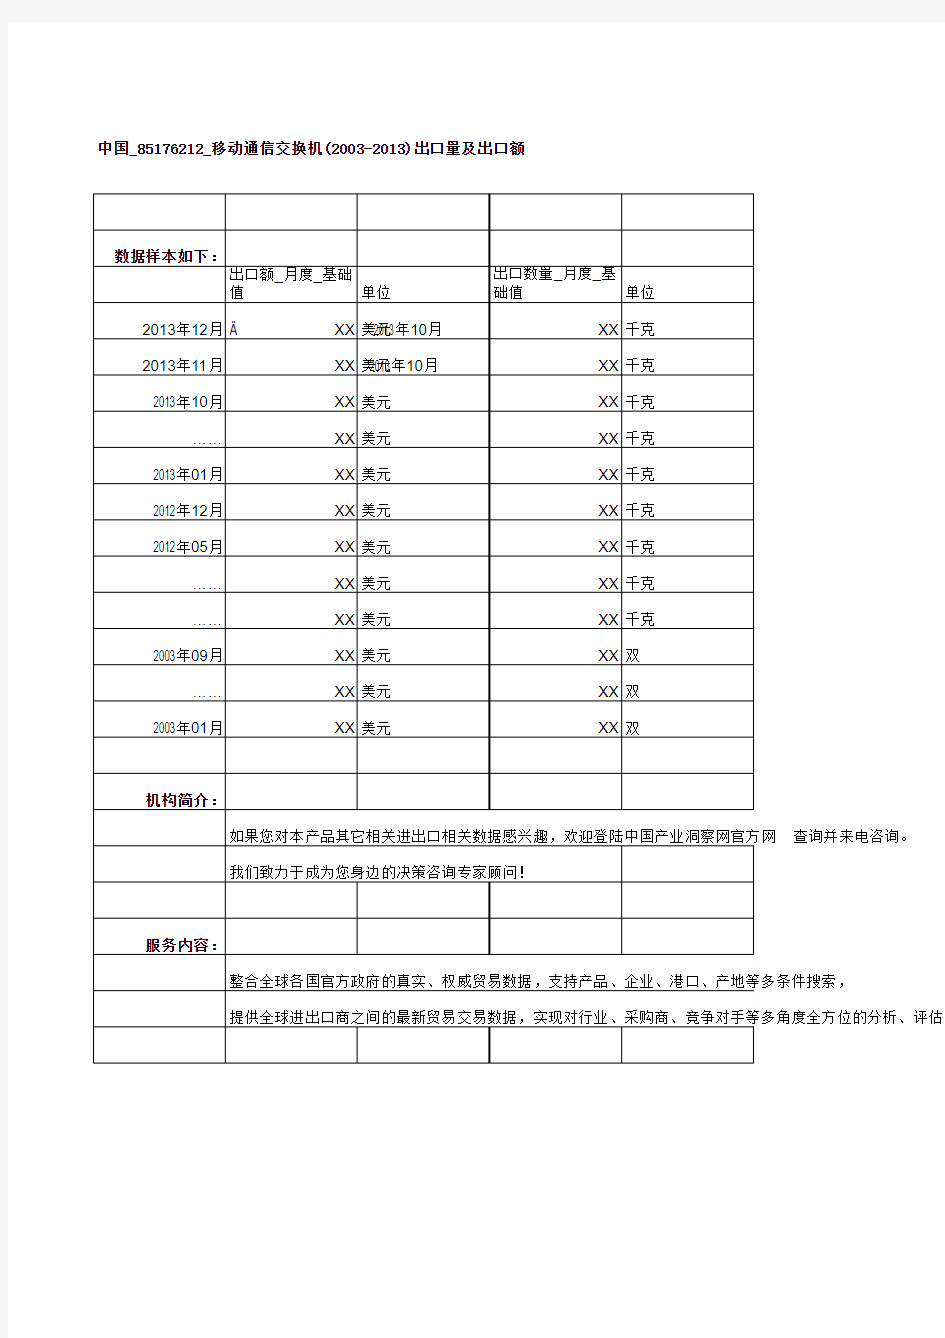 中国_85176212_移动通信交换机(2003-2013)出口量及出口额